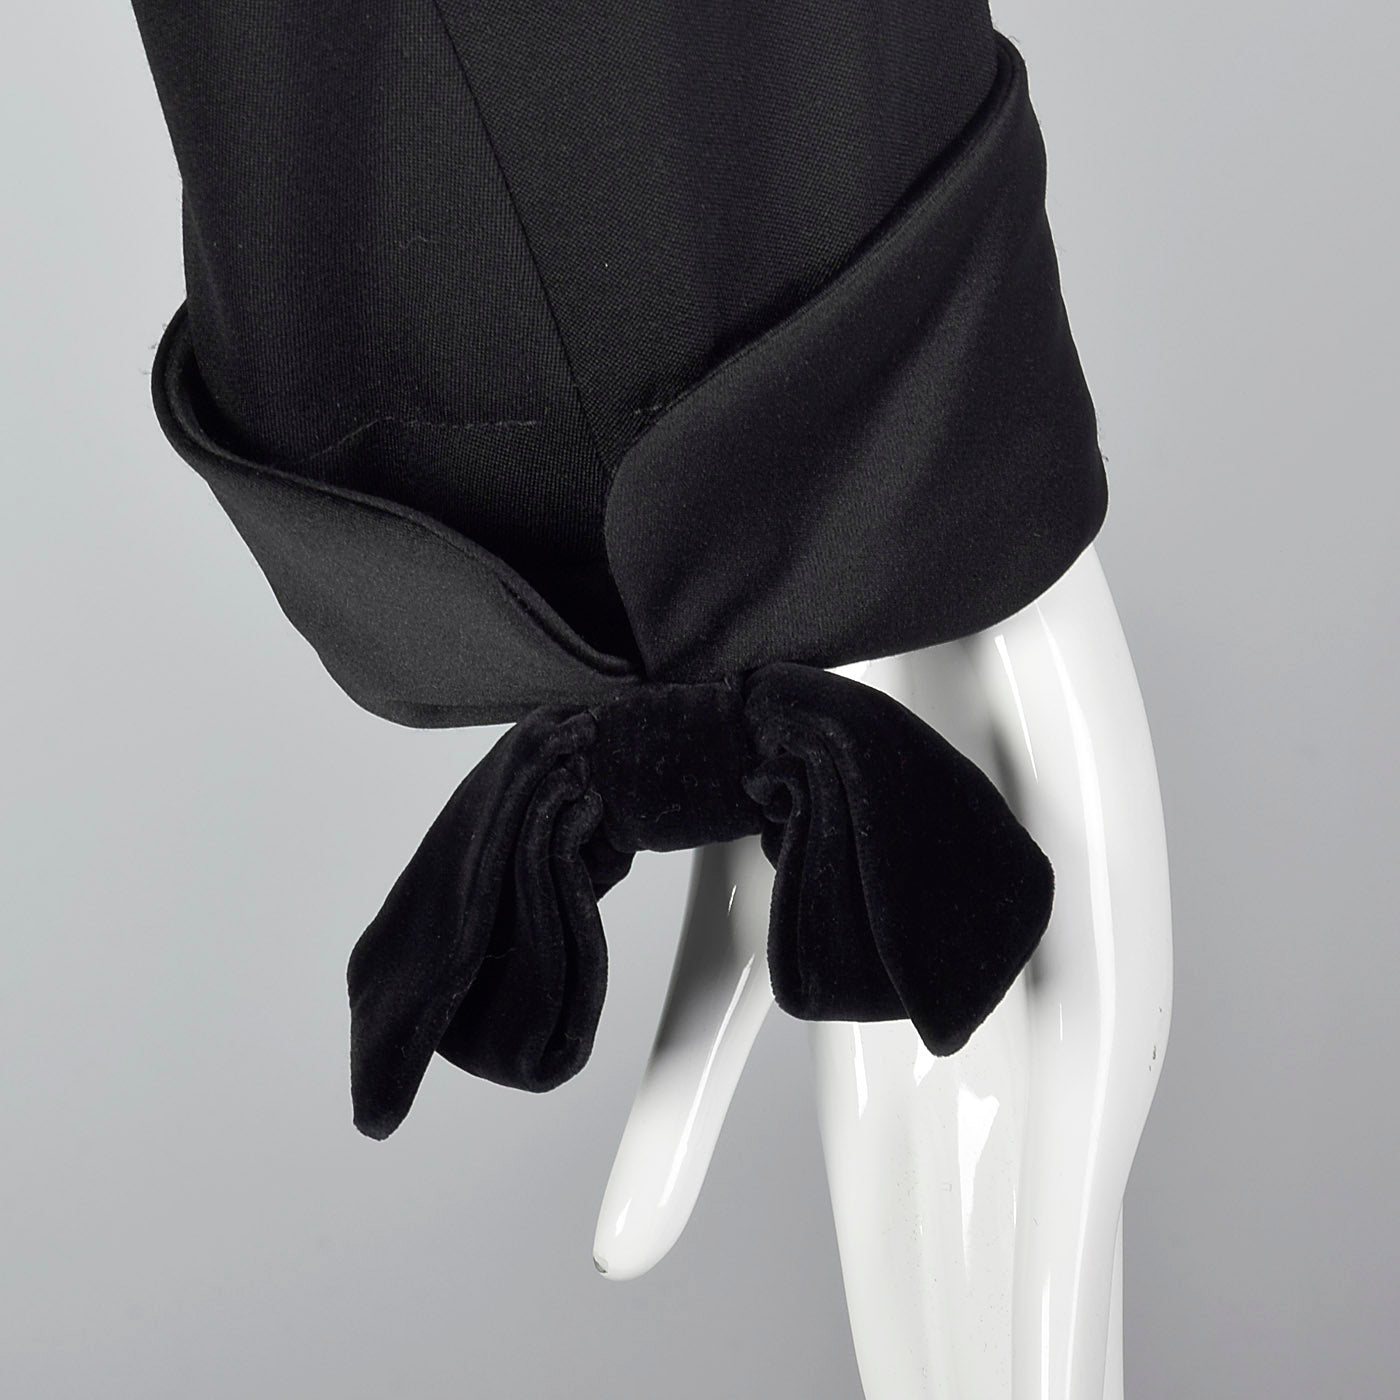 Yves Saint Laurent Rive Gauche Black Skirt Suit with Velvet Trim